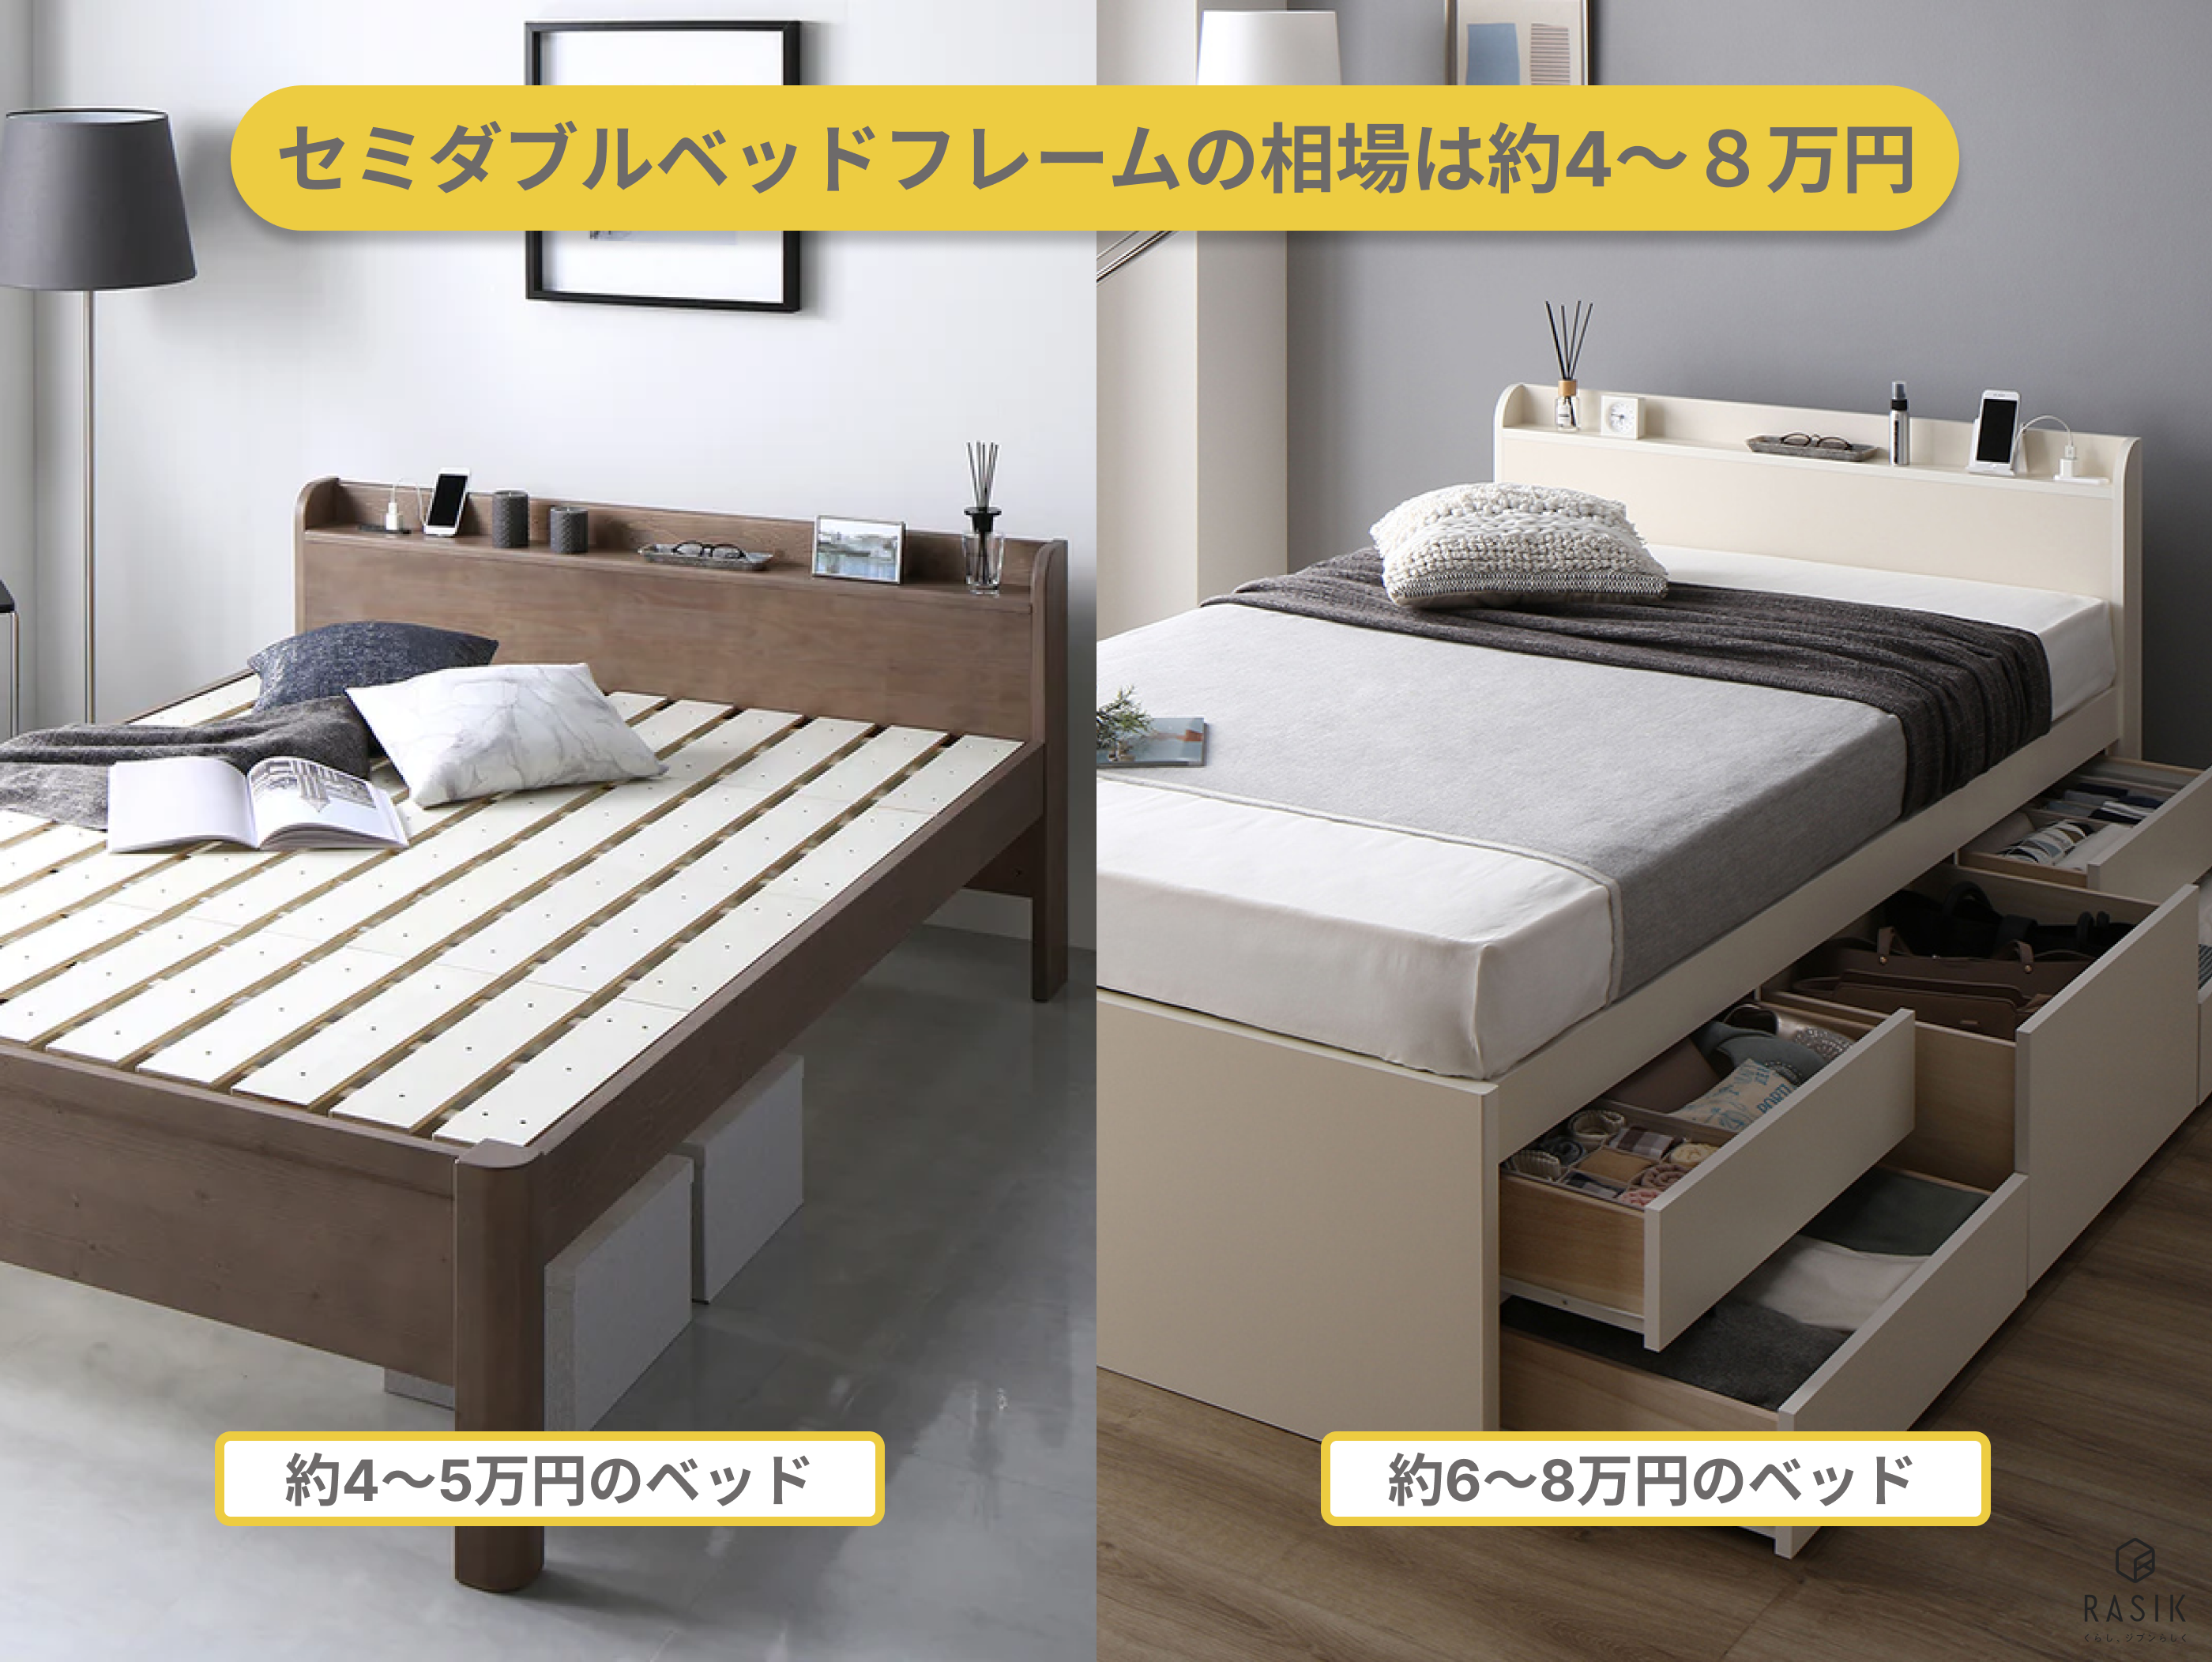 約4～5万円と約6～8万円のベッドの画像